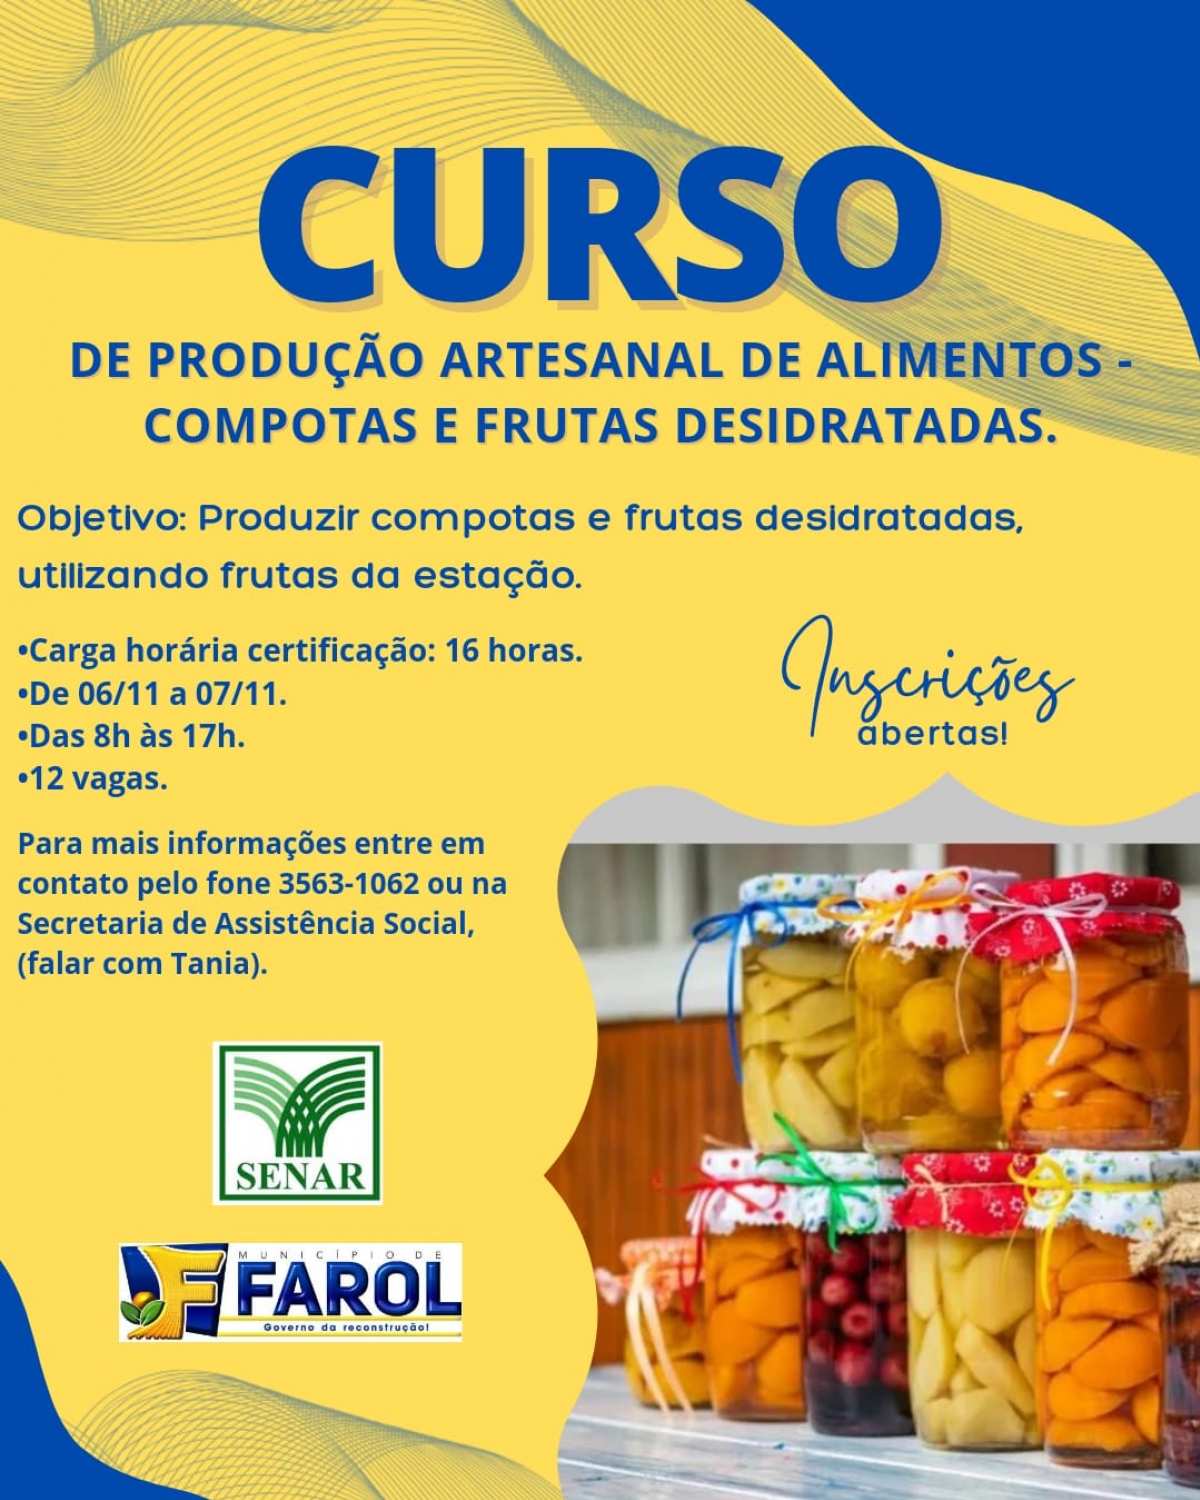 Farol/Senar: Curso de Produção Artesanal de Alimentos  em compotas e frutas cristalizadas está com vagas abertas  